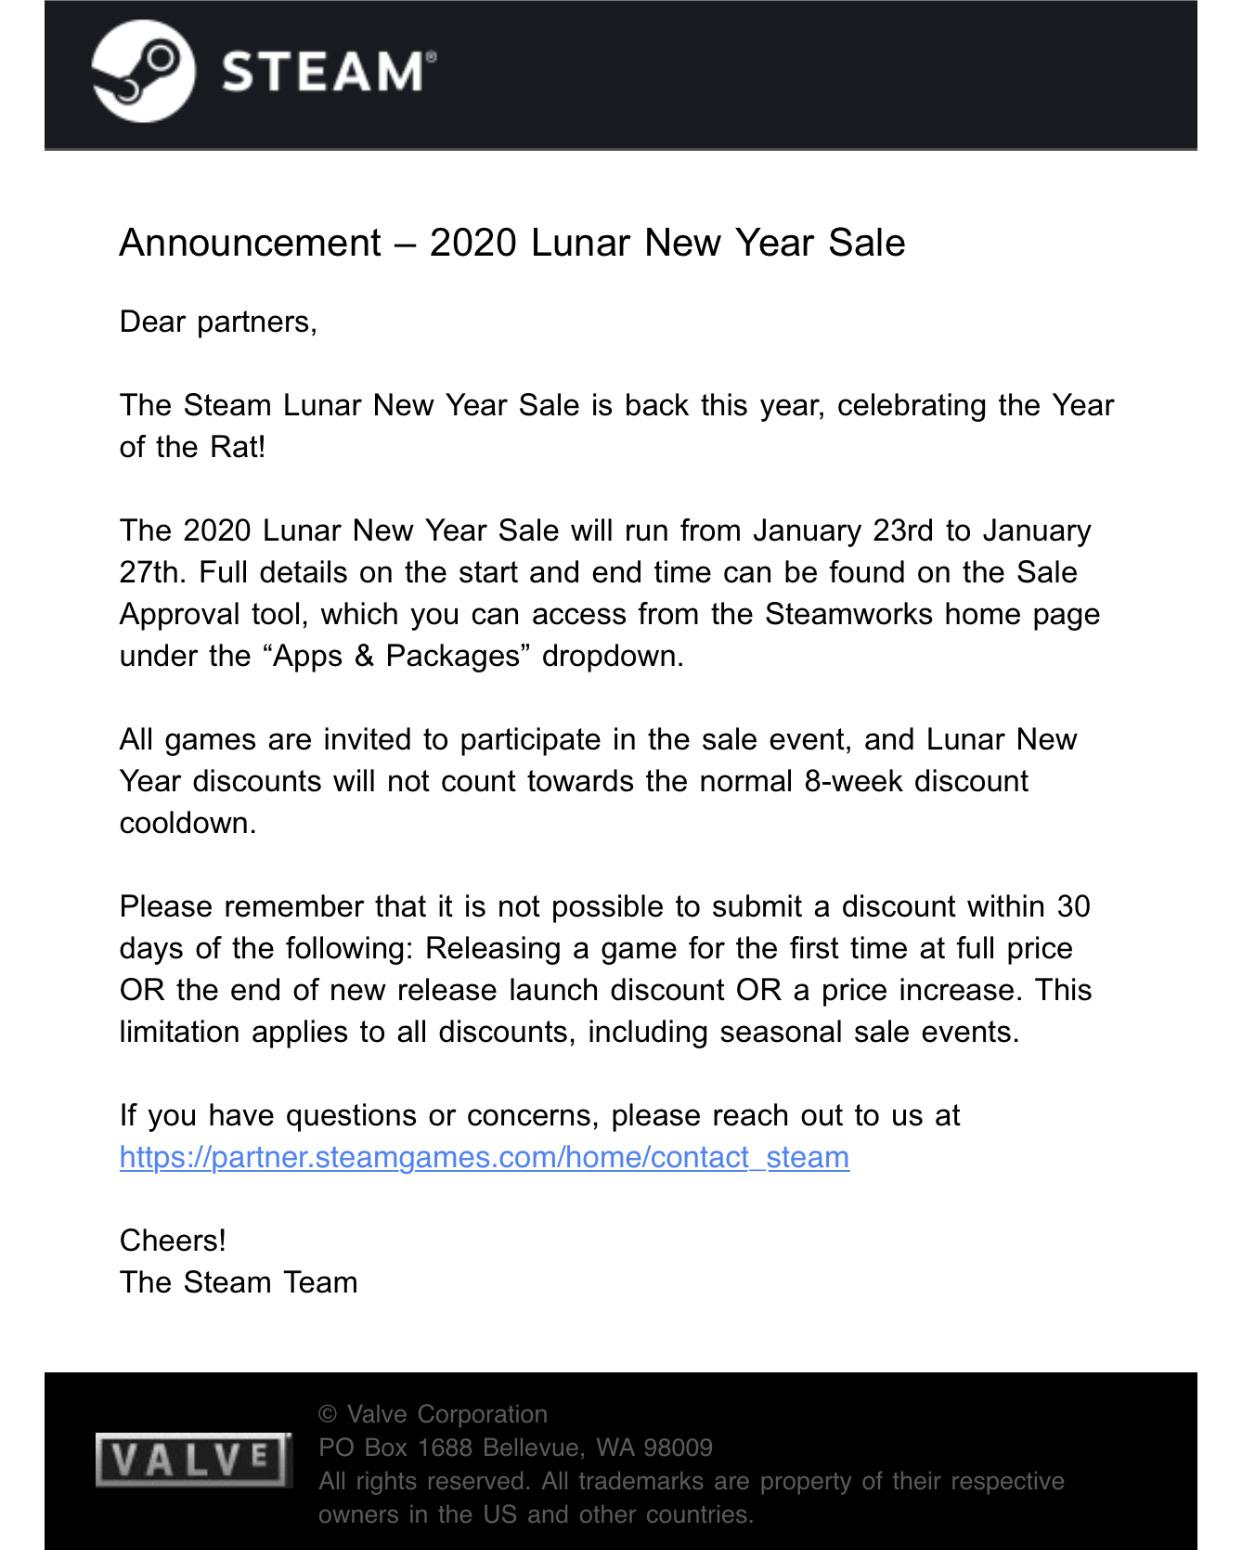 steam lunar new year sale leak 2020 1